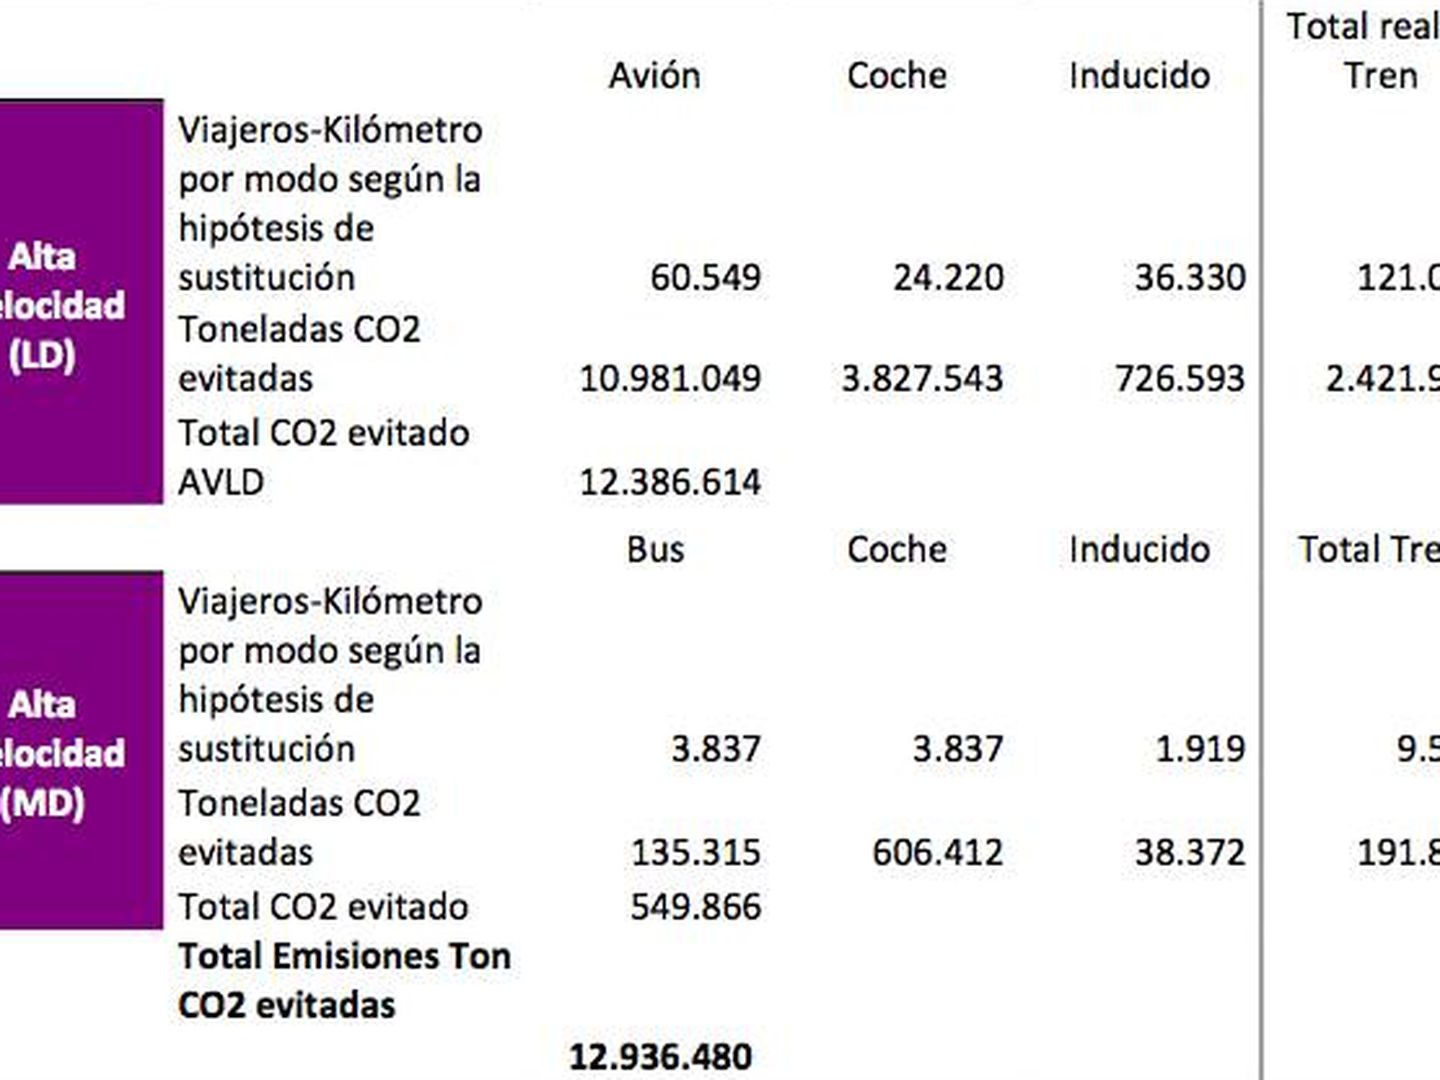 Ahorro estimado de emisiones de CO2 en los Servicios Alta Velocidad (1992-2016). (Renfe)